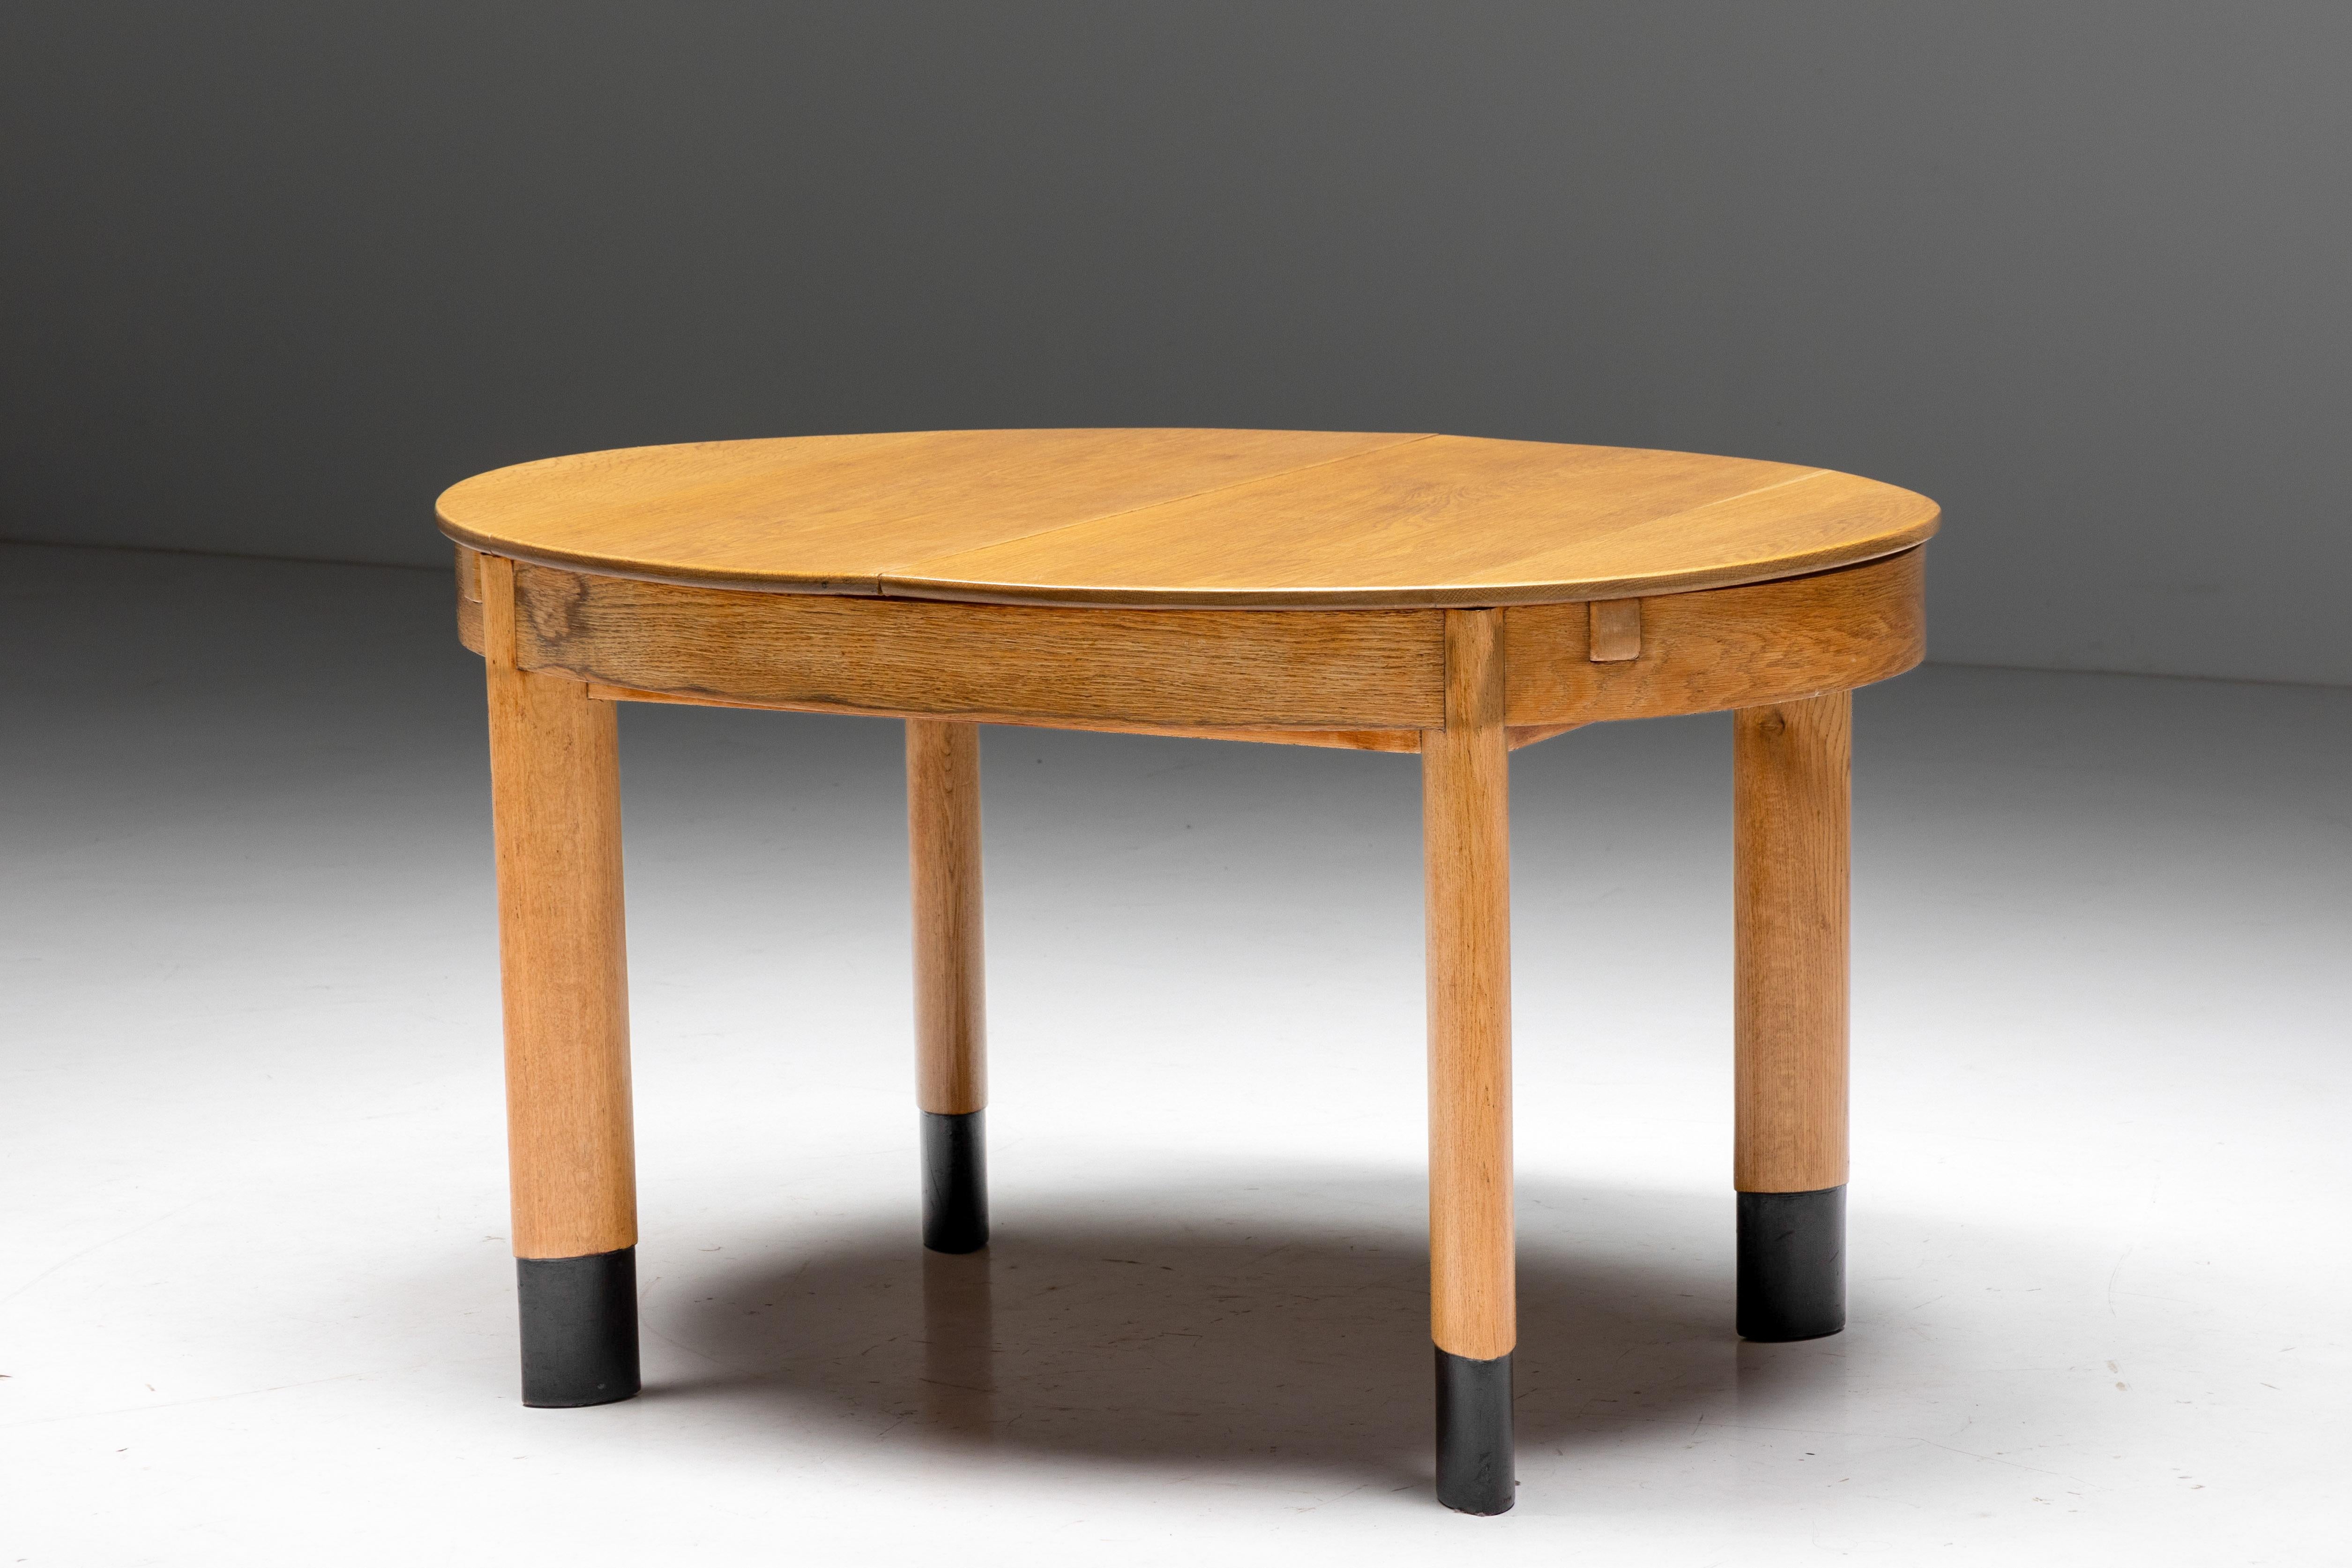 Ovaler Esstisch in Eiche, auf nebeneinander gestellten ovalen Beinen, niederländisch, 1920er Jahre

Ein so minimalistisches und modernes Stück für seine Zeit. Zwei elliptische Formen, die einer nebeneinander liegenden Achse folgen, zeugen von